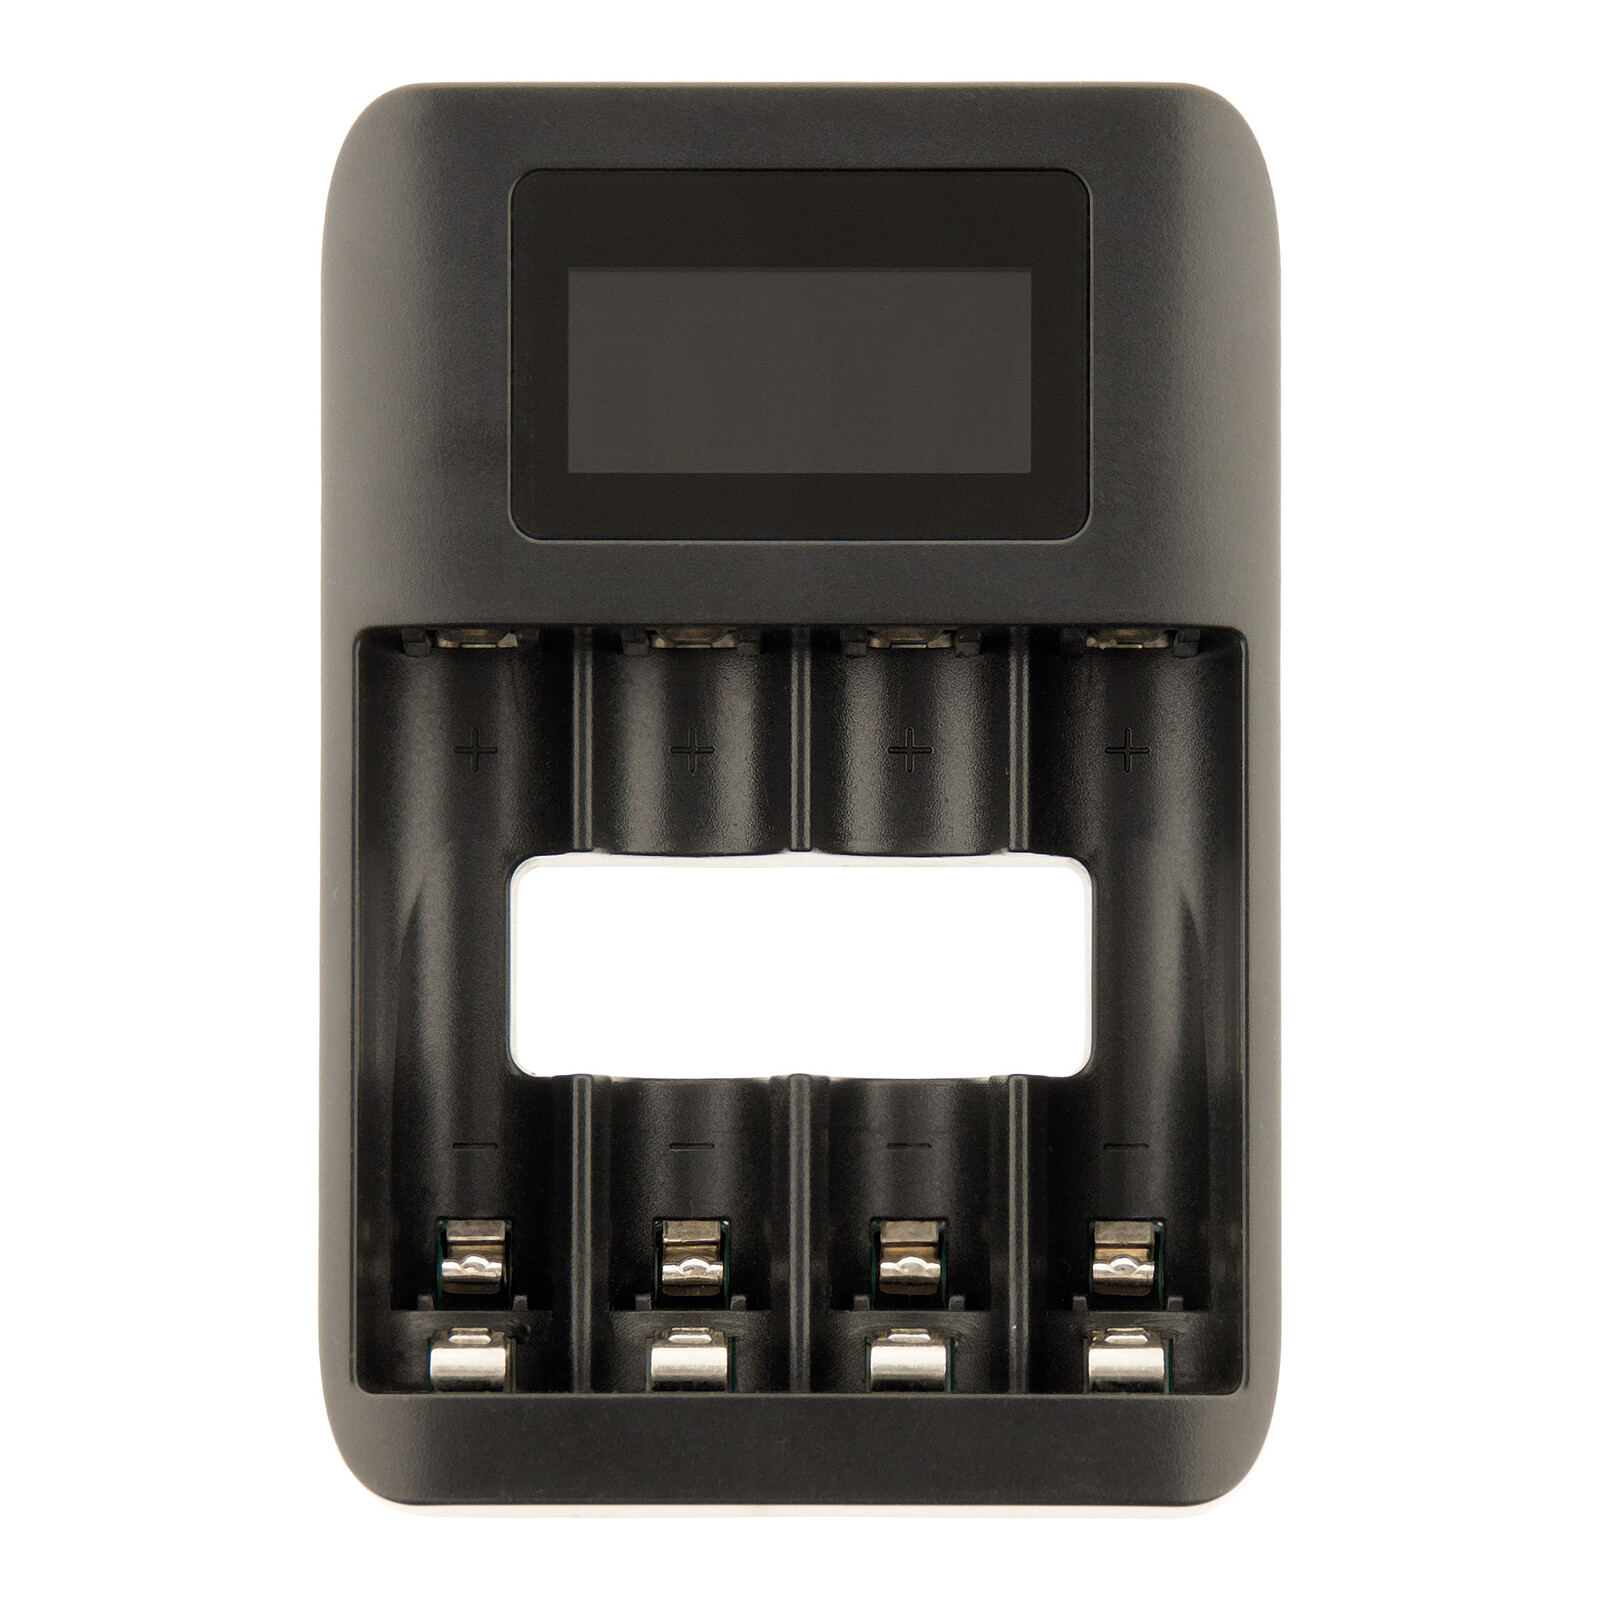 Chargeur USB Patona à piles rondes : Chargeur USB pour différentes tailles  de piles rondes